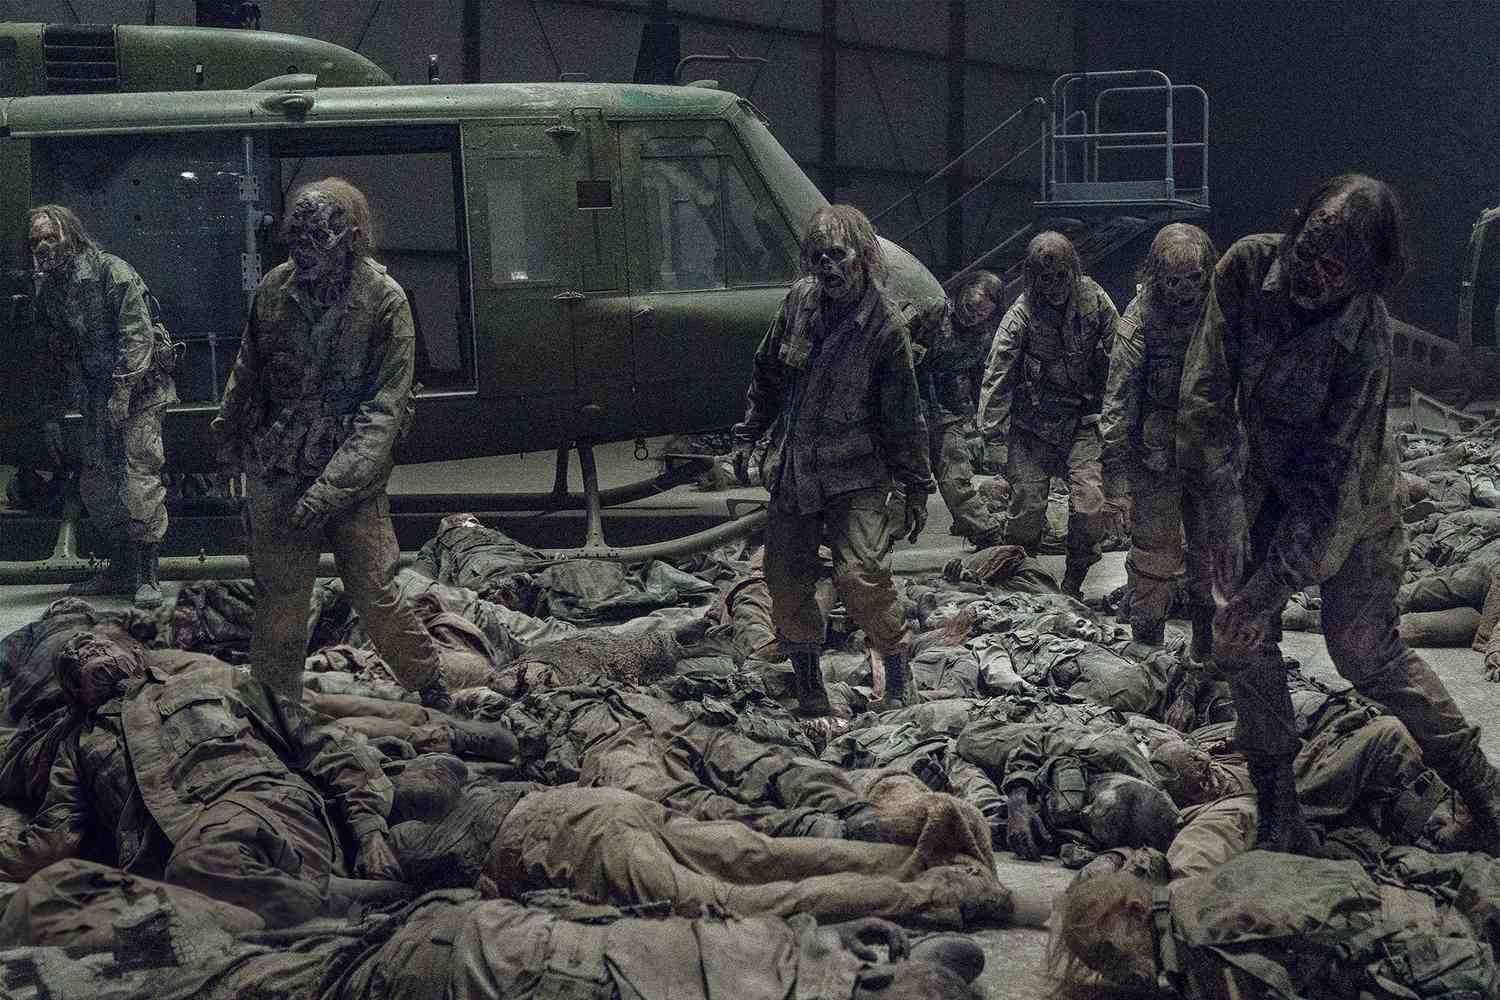 Sleeping walkers on 'The Walking Dead'